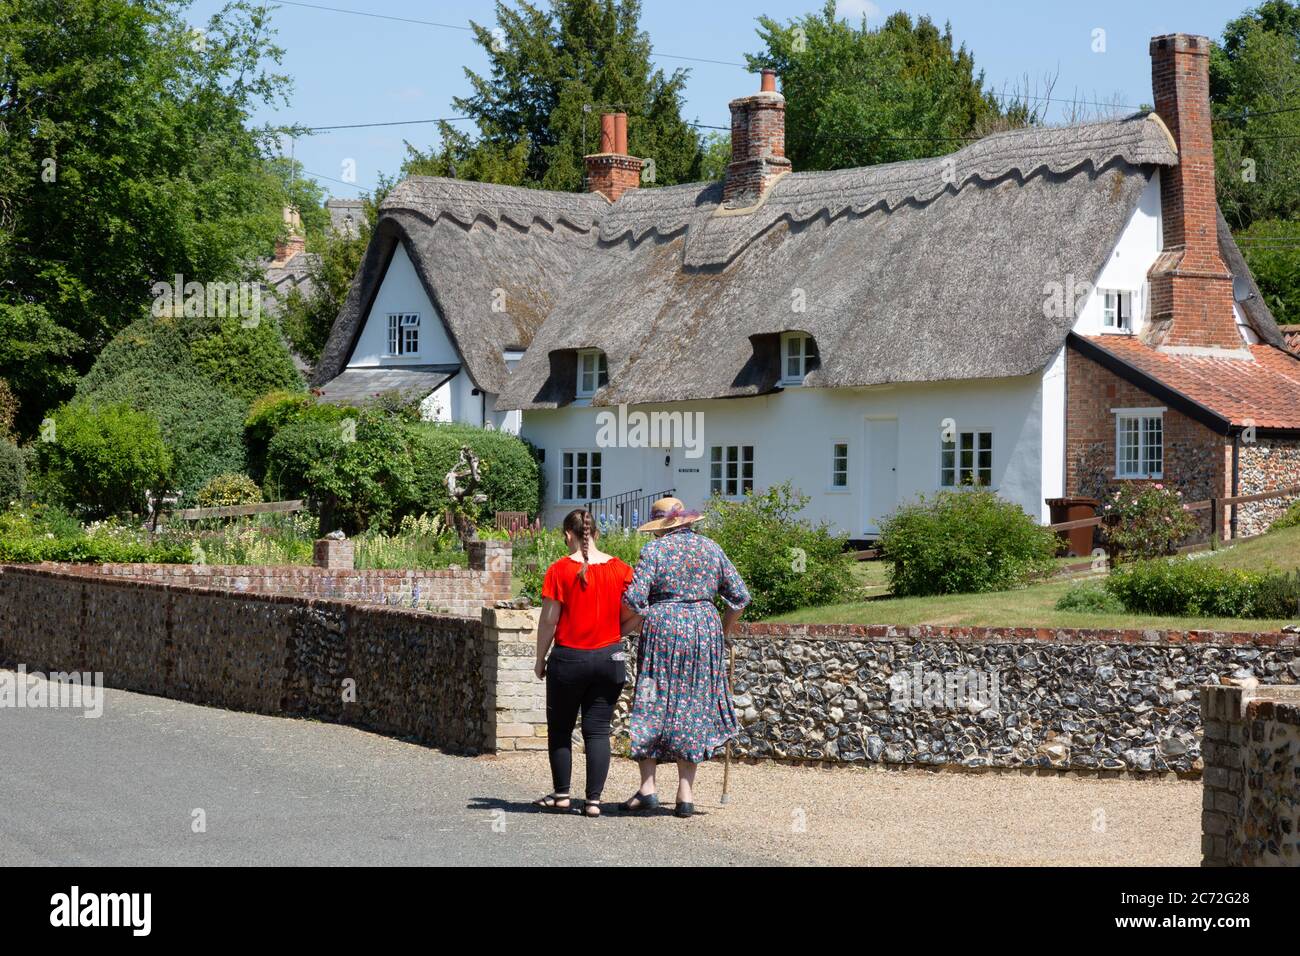 Scène de rue de village anglais en été; deux femmes marchant dans une rue devant un cottage traditionnel de chaume, village de Dalham, Suffolk Angleterre Royaume-Uni Banque D'Images